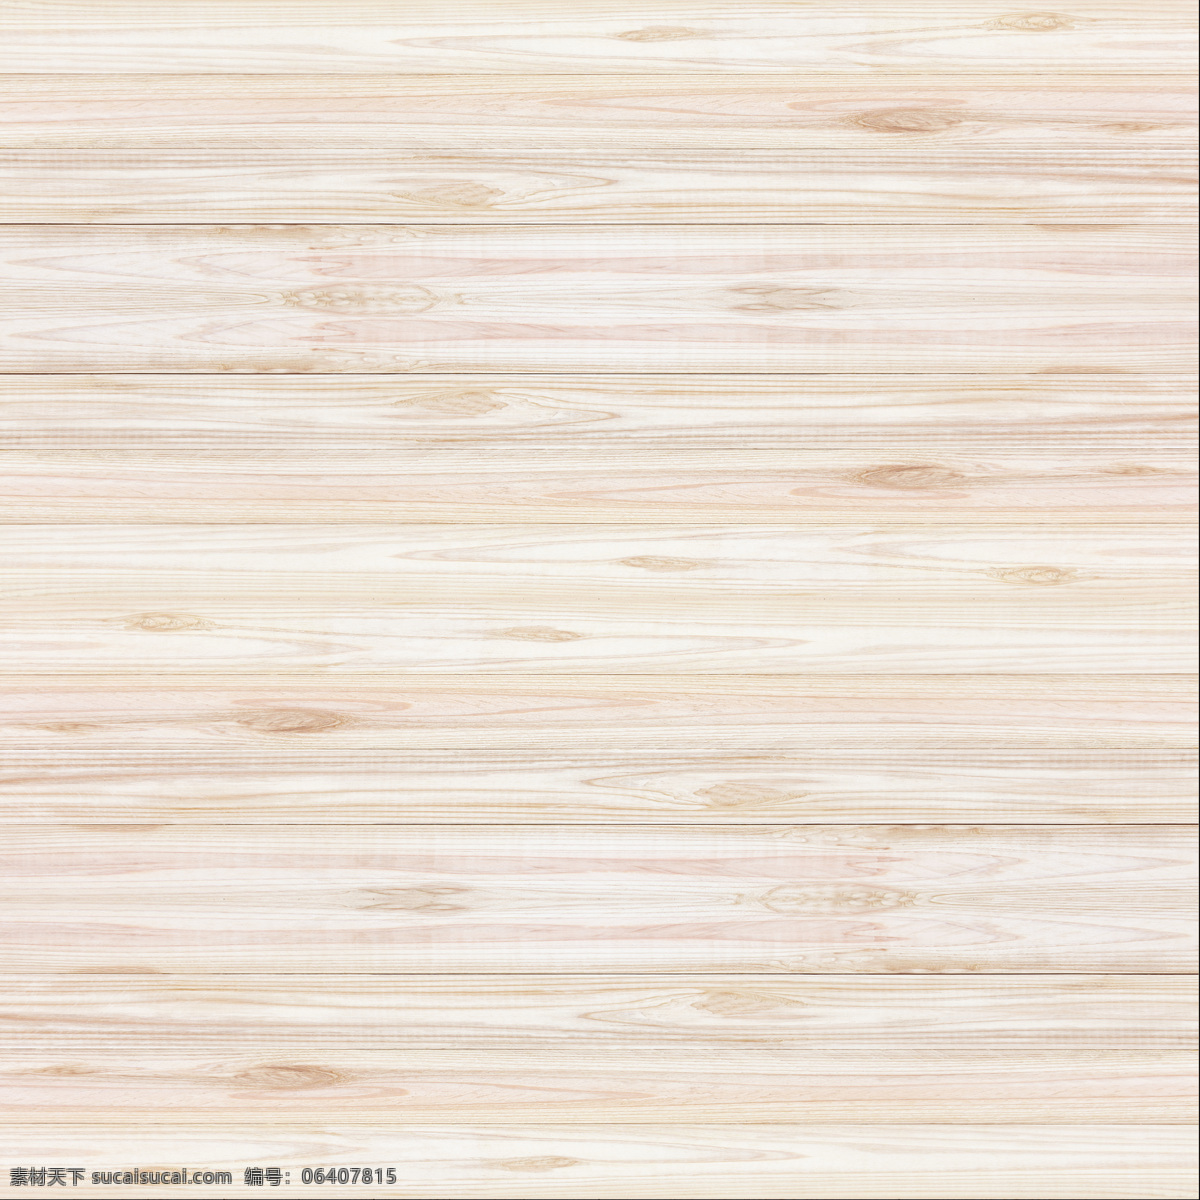 彩色 条纹 木板 背景 图 木纹 背景素材 材质贴图 高清木纹 木地板 堆叠木纹 高清 室内设计 木纹纹理 木质纹理 地板 木头 木板背景